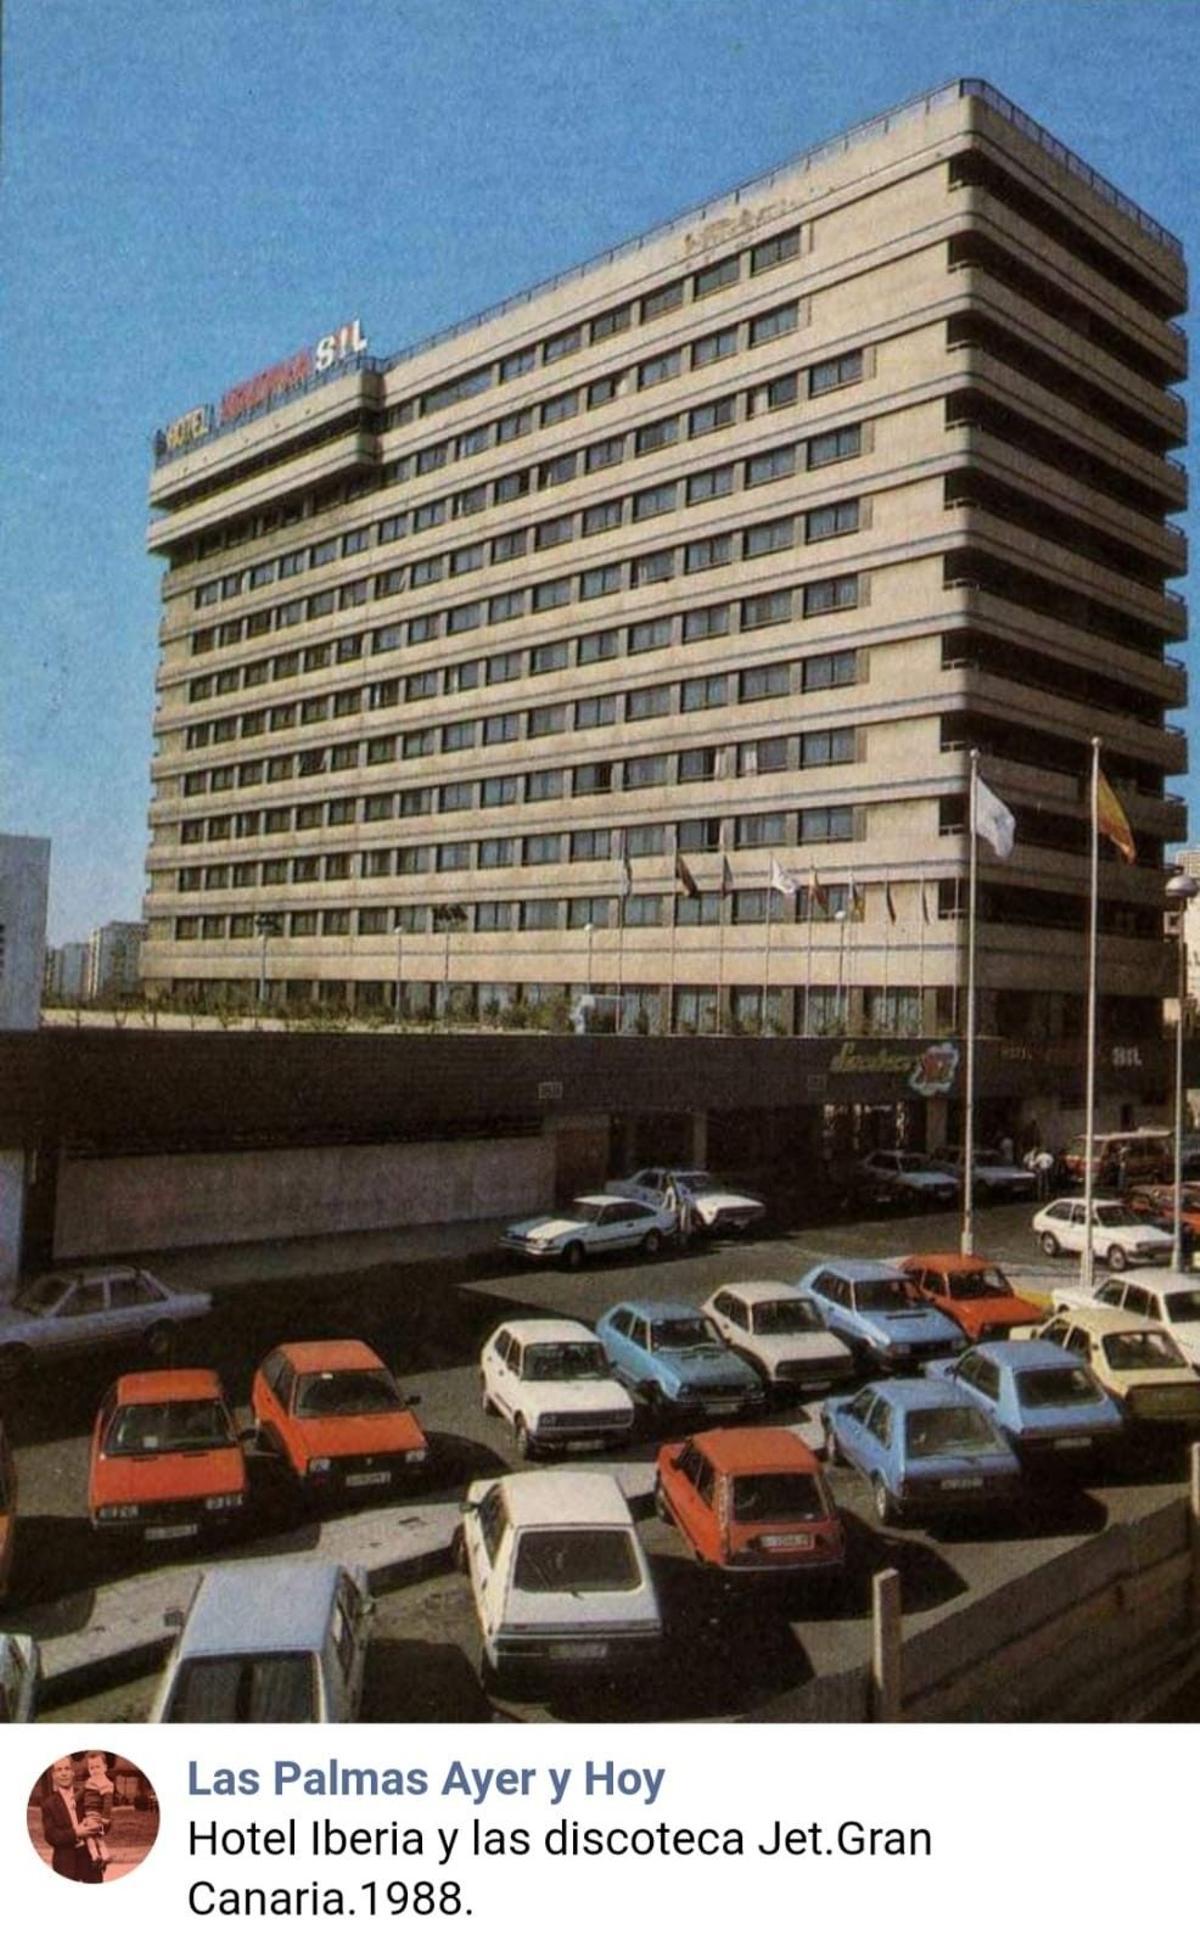 Vista del Hotel Iberia en 1988, bajo la marca Sol.